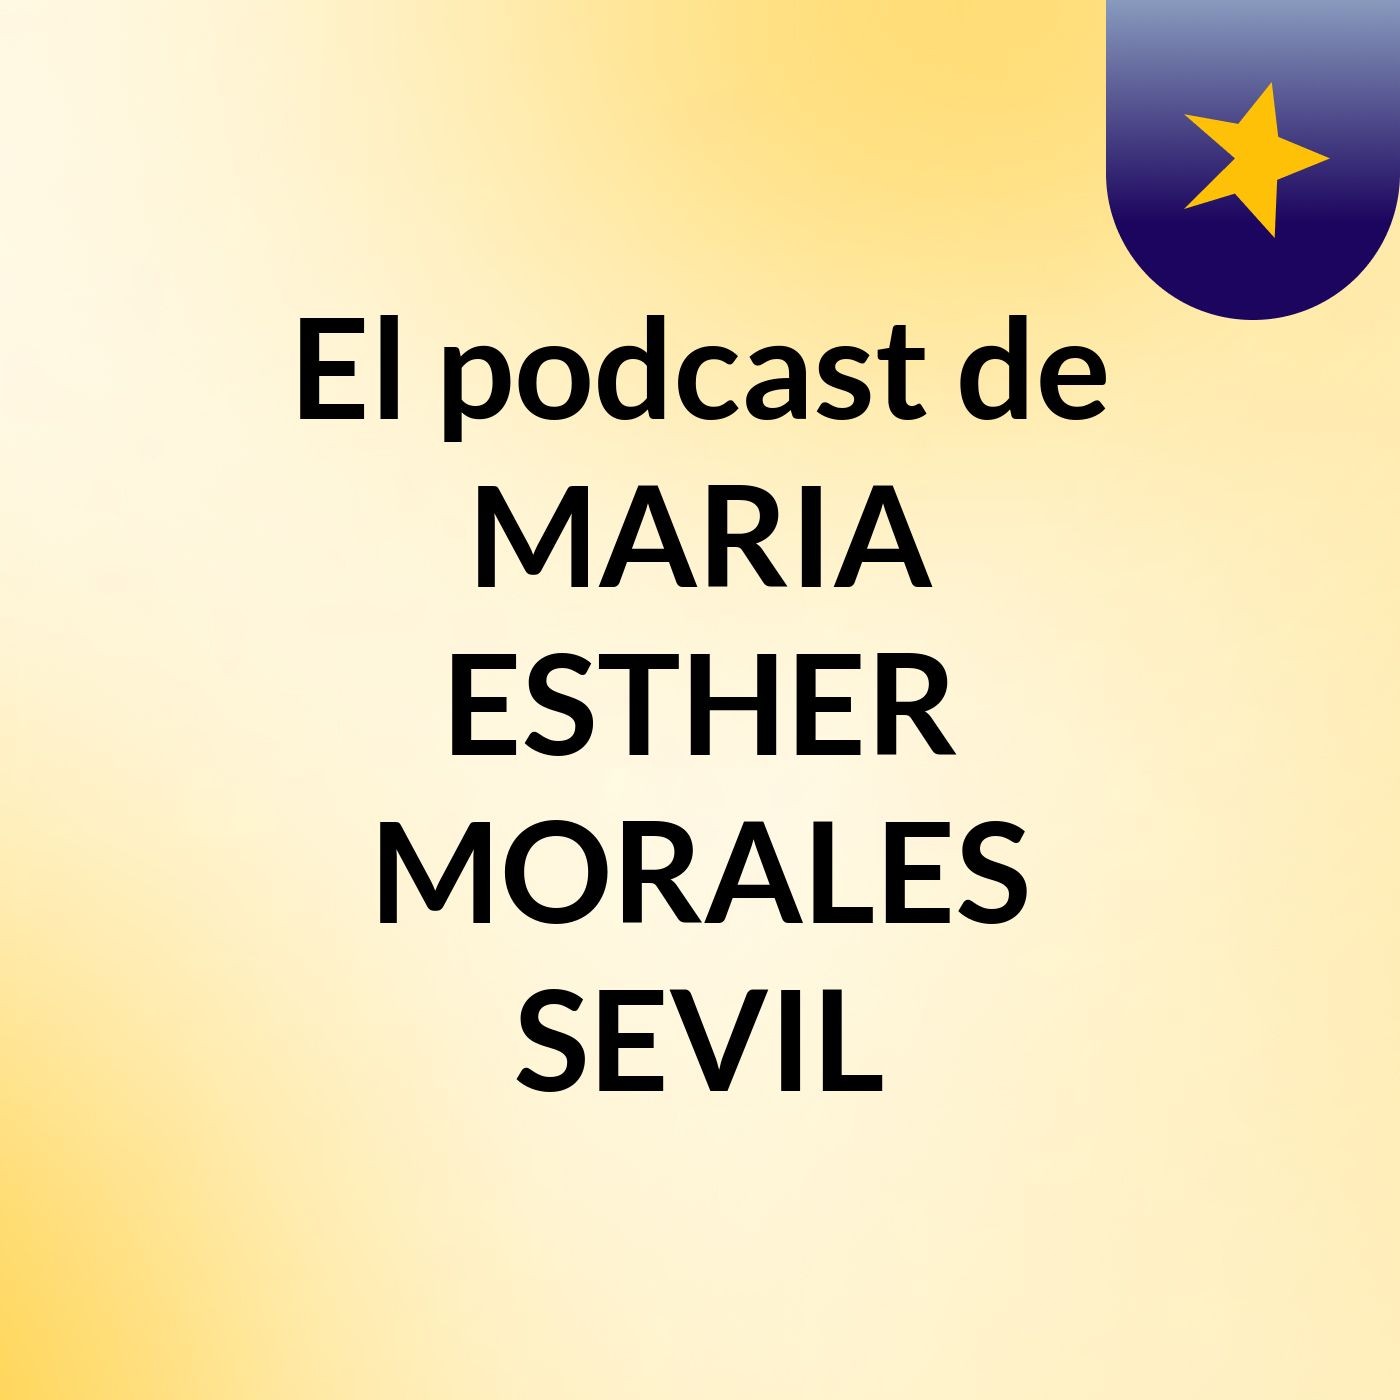 El podcast de MARIA ESTHER MORALES SEVIL